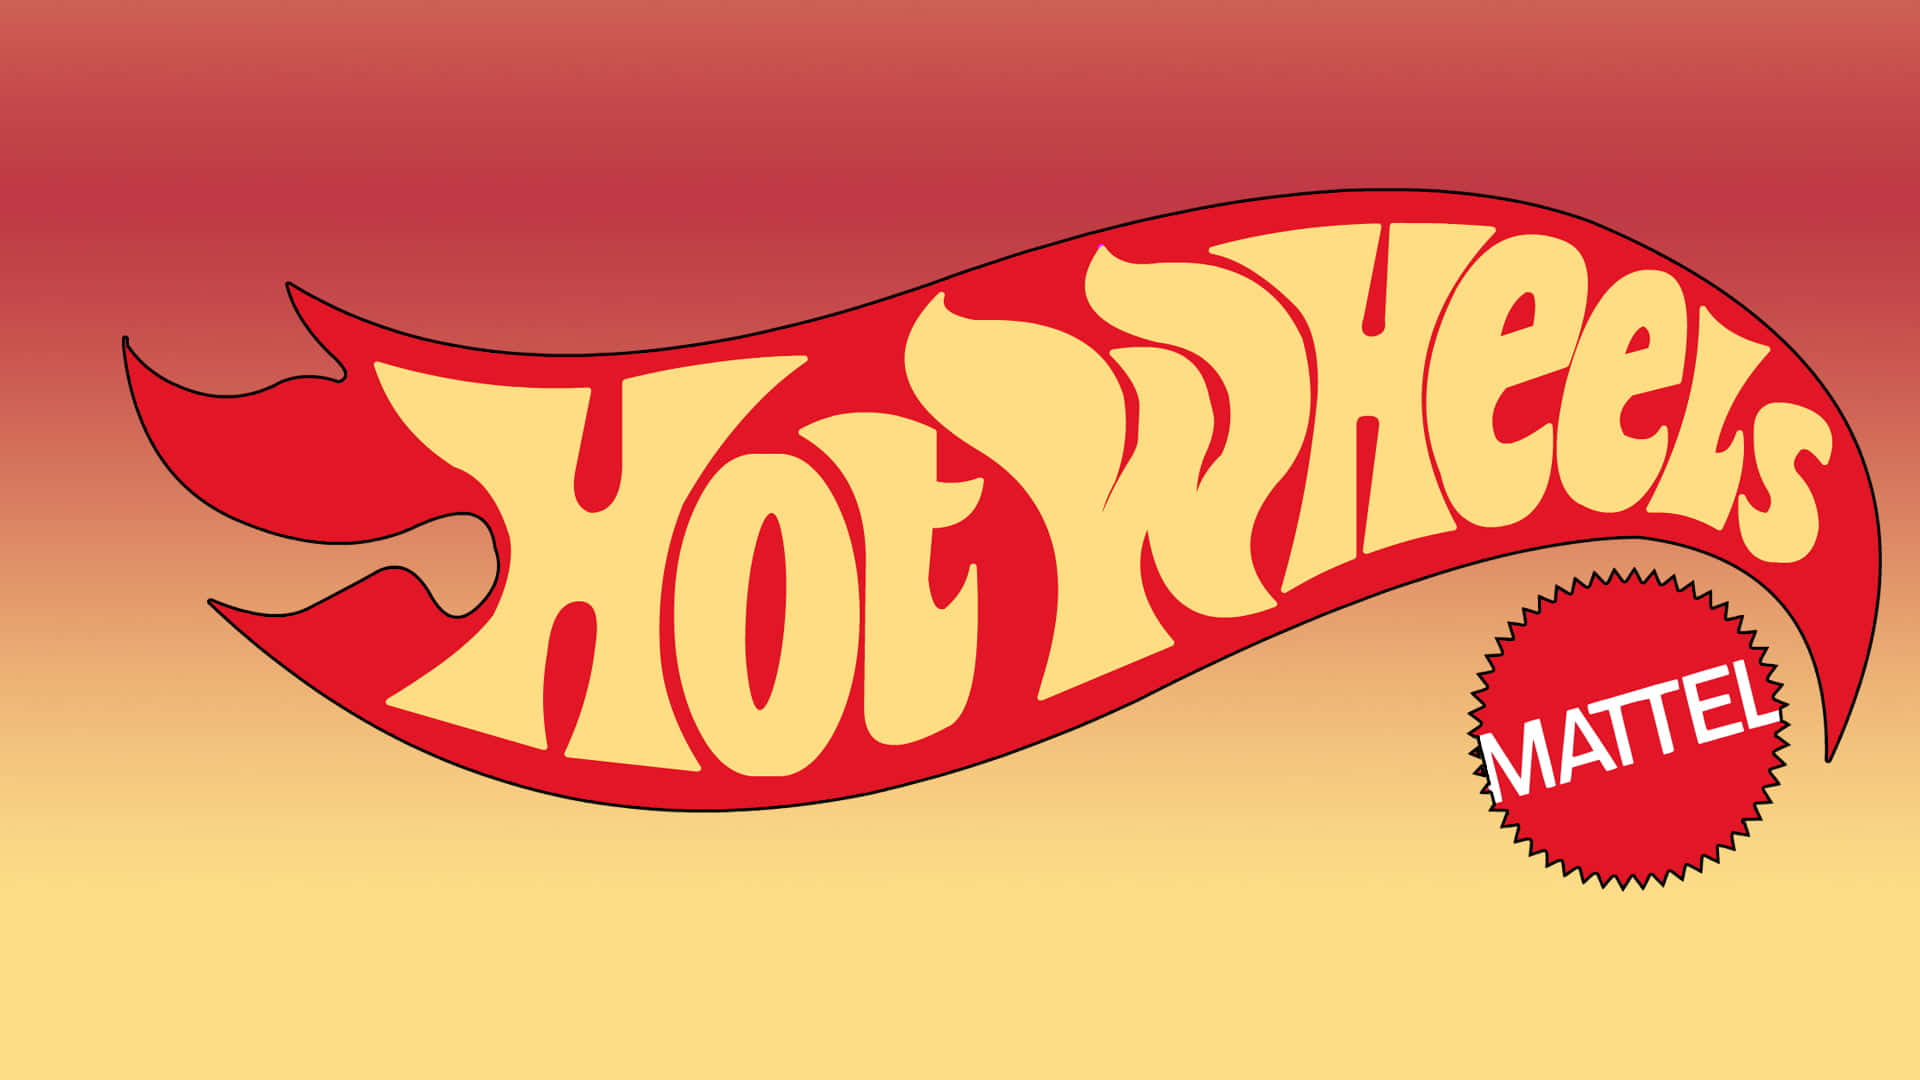 Hotwheels-logo Mit Einer Flamme.